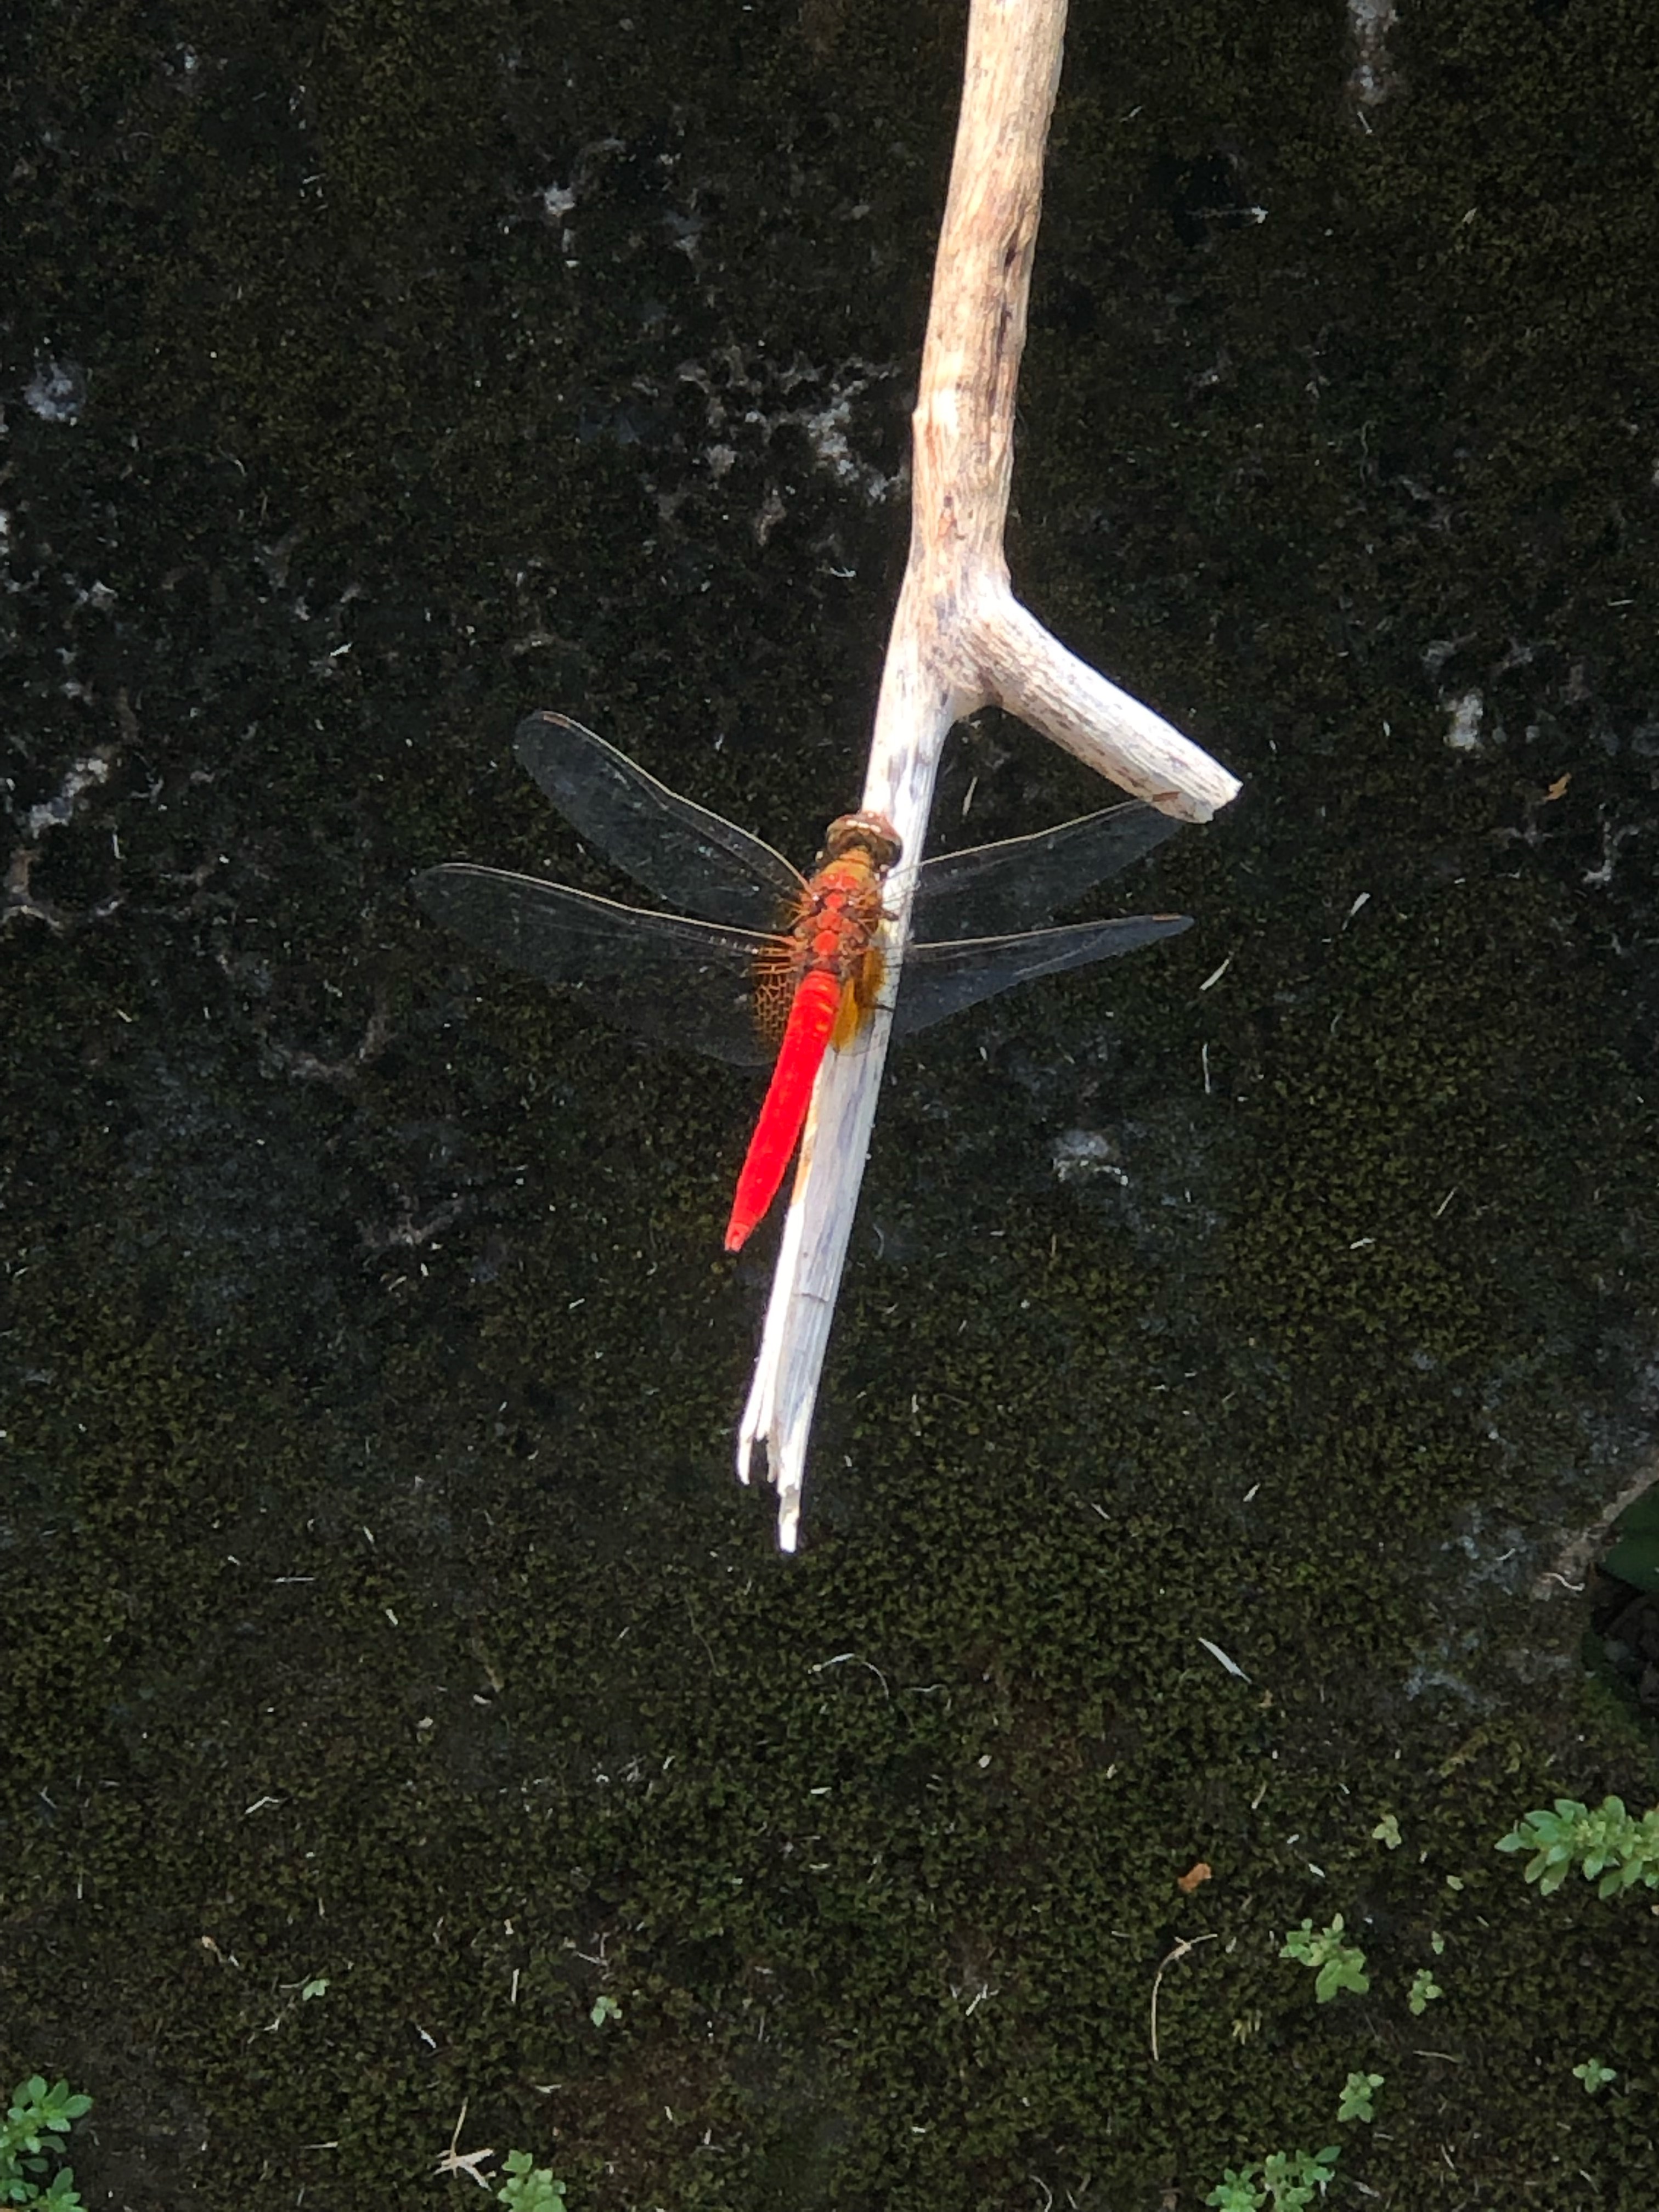 Scarlet skimmer